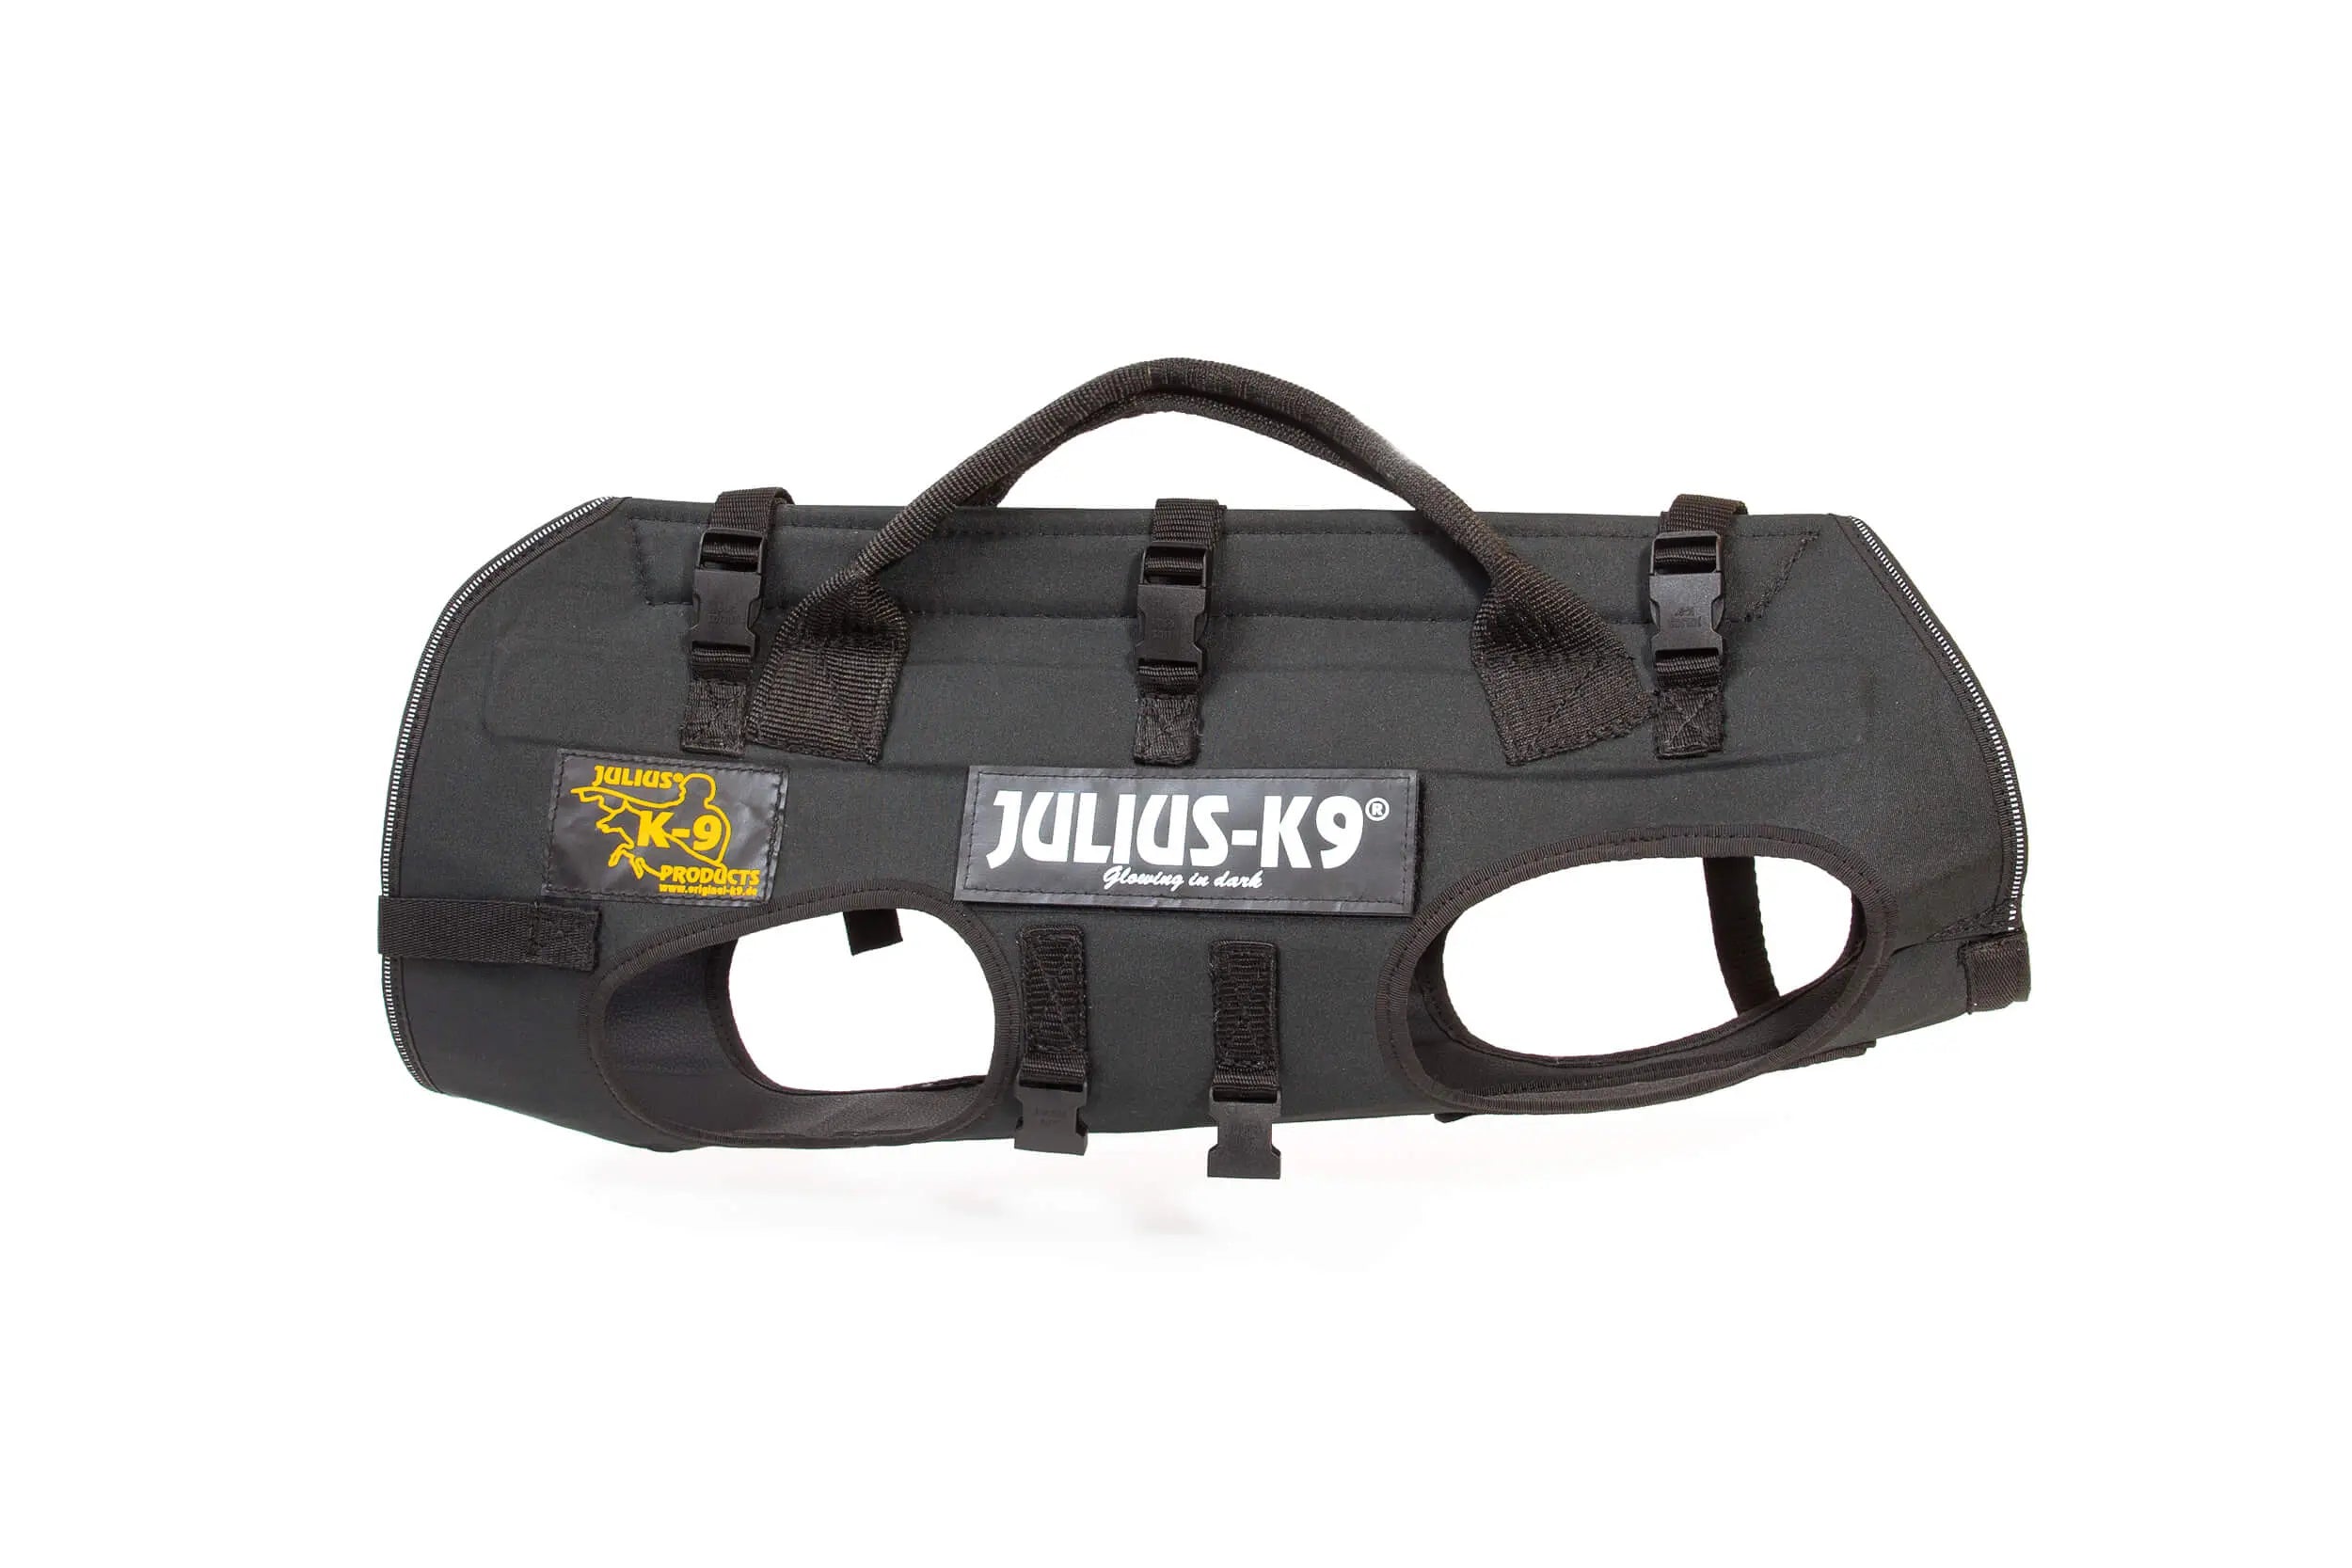 Julius-K9 Rappelling & Carrying Harnes - Julius-K9 LLC